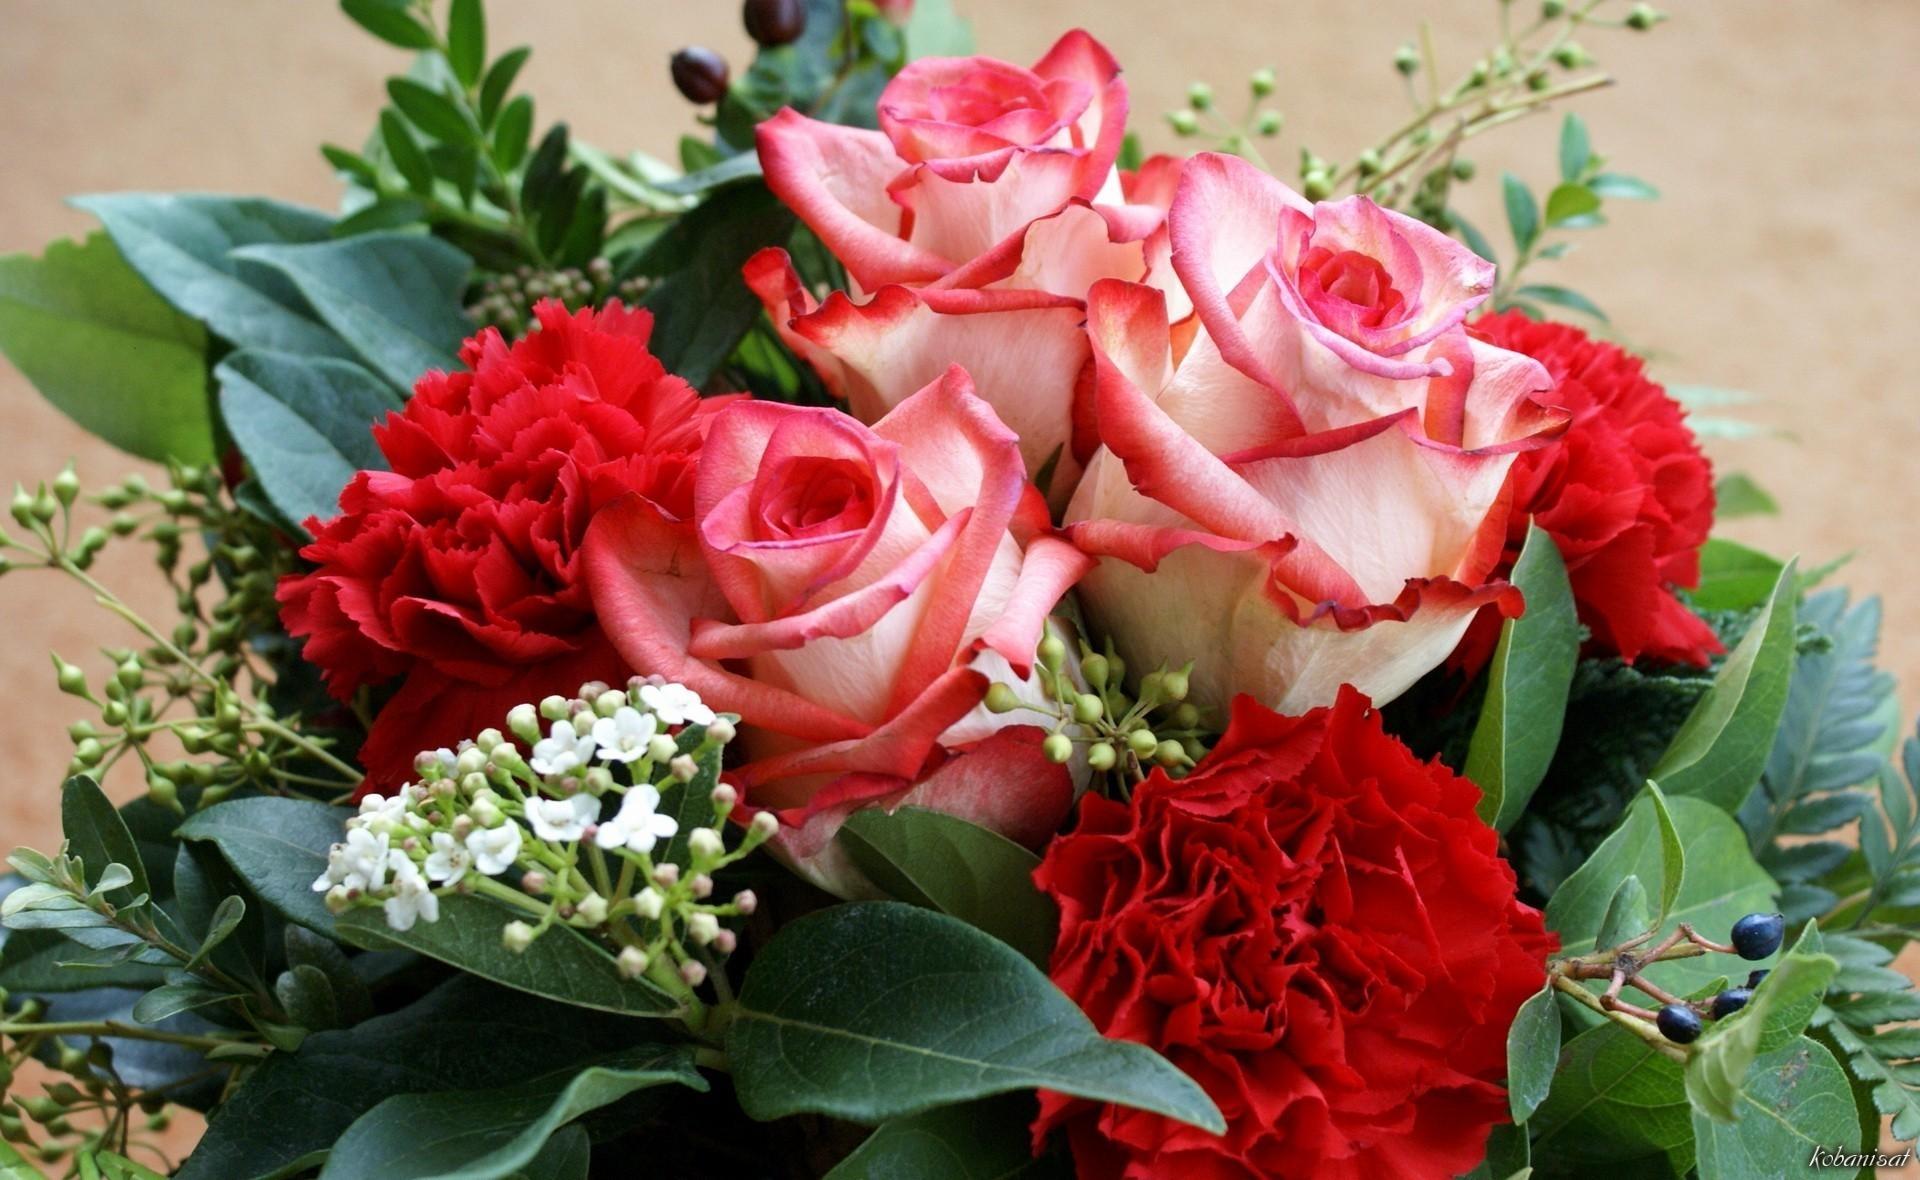 531 10 باقات زهور - اجمل باقات الزهور دينا عمار